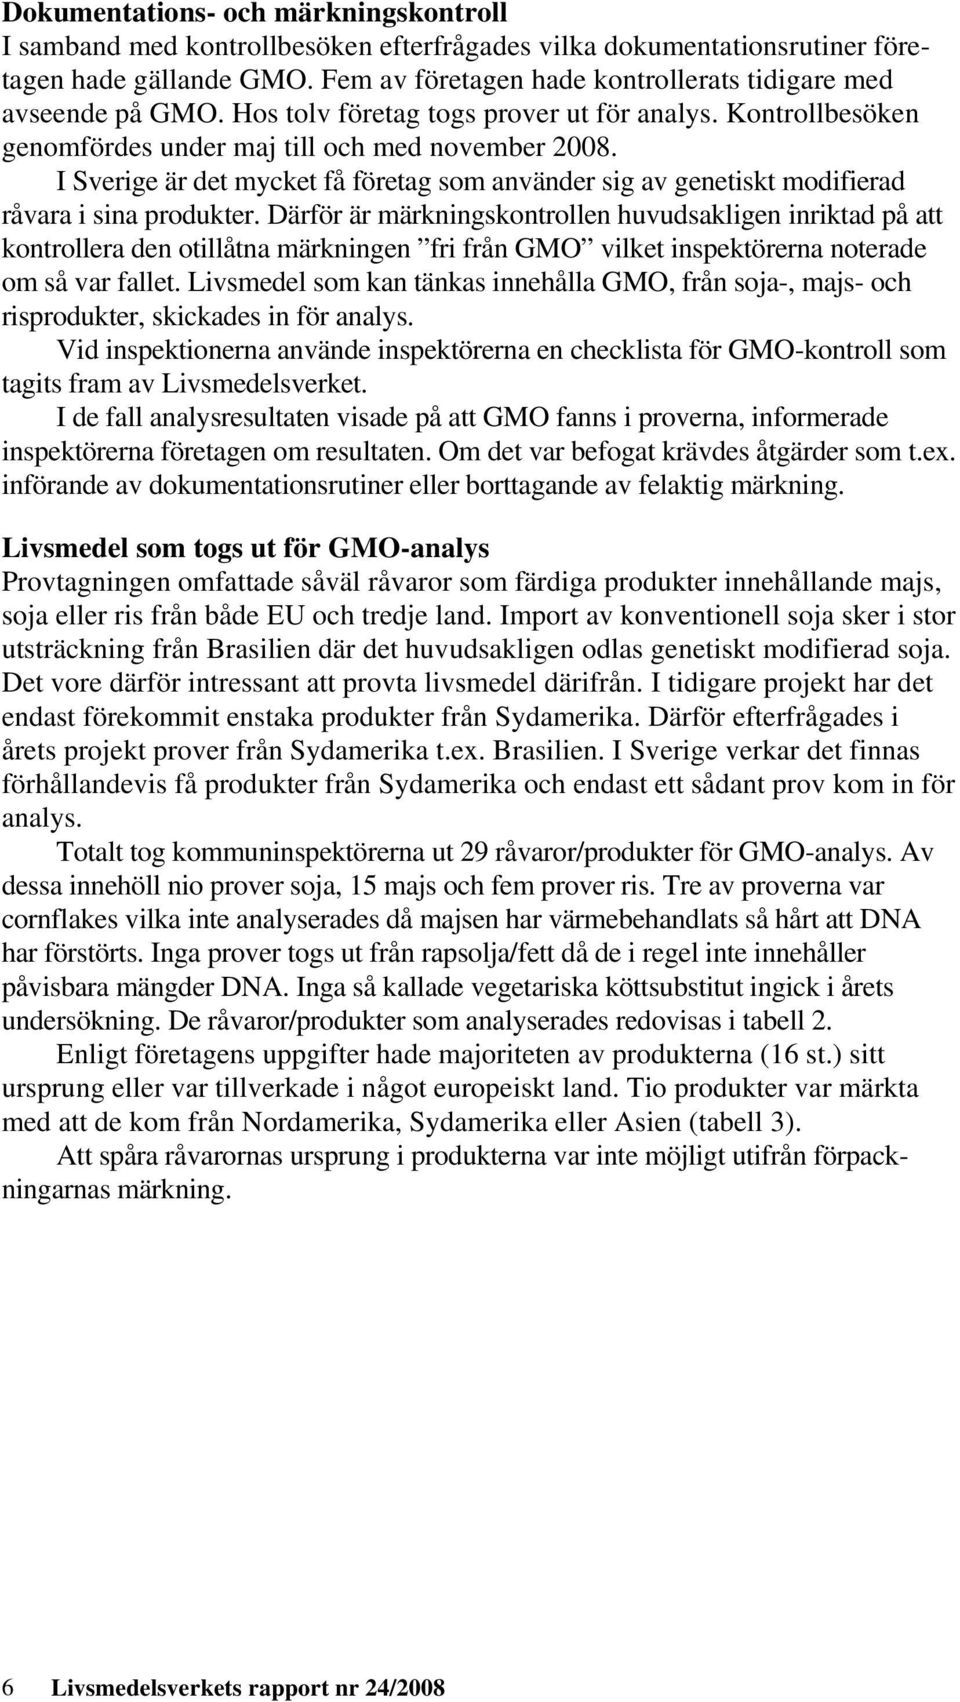 I Sverige är det mycket få företag som använder sig av genetiskt modifierad råvara i sina produkter.